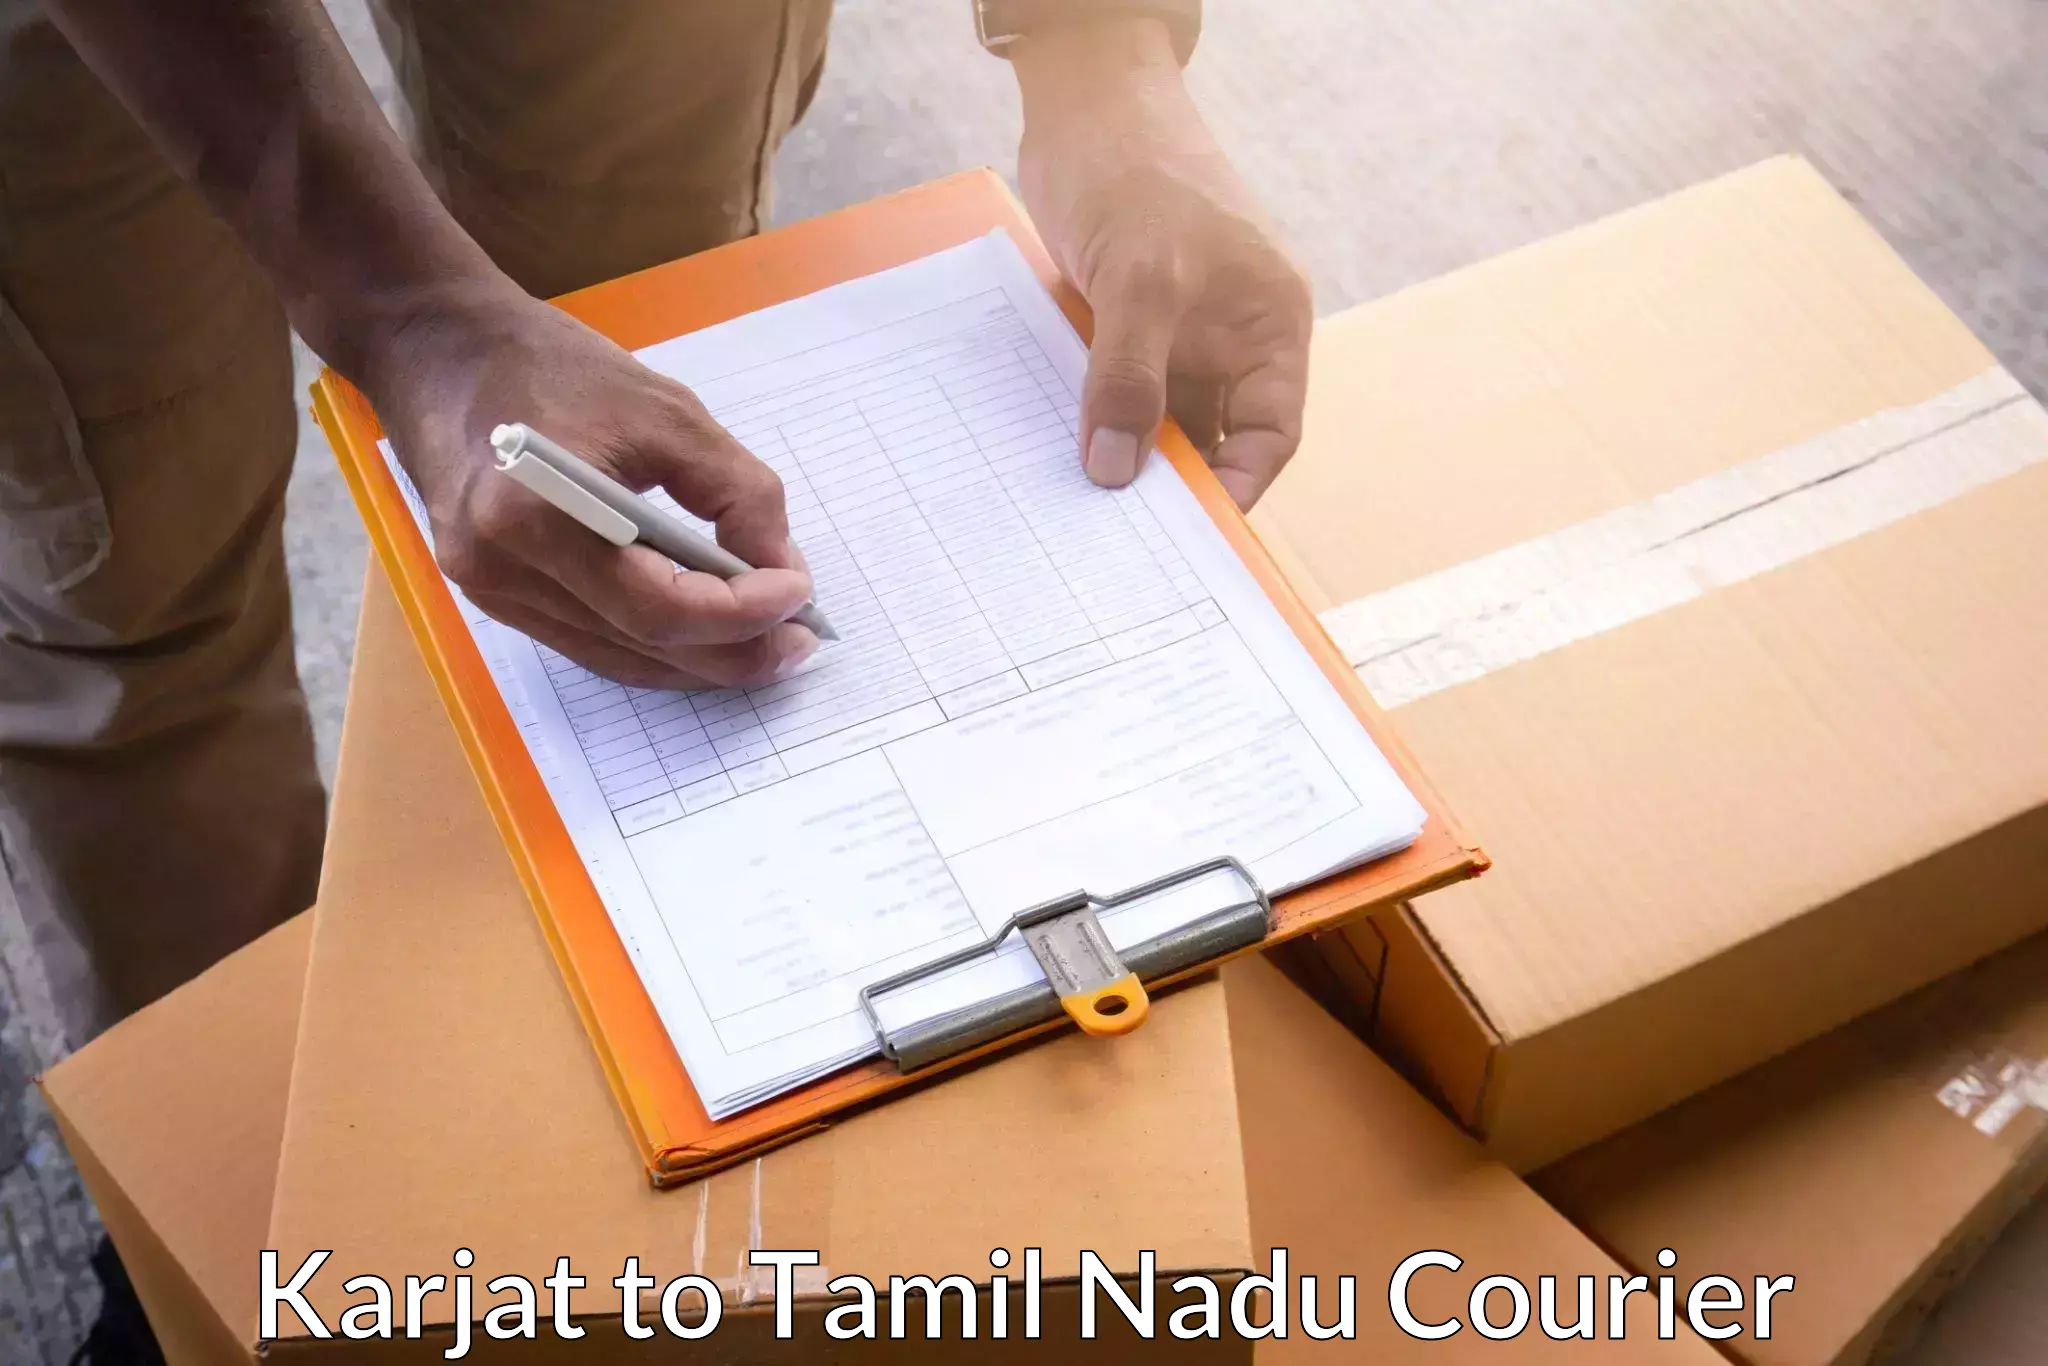 Global parcel delivery Karjat to Tamil Nadu